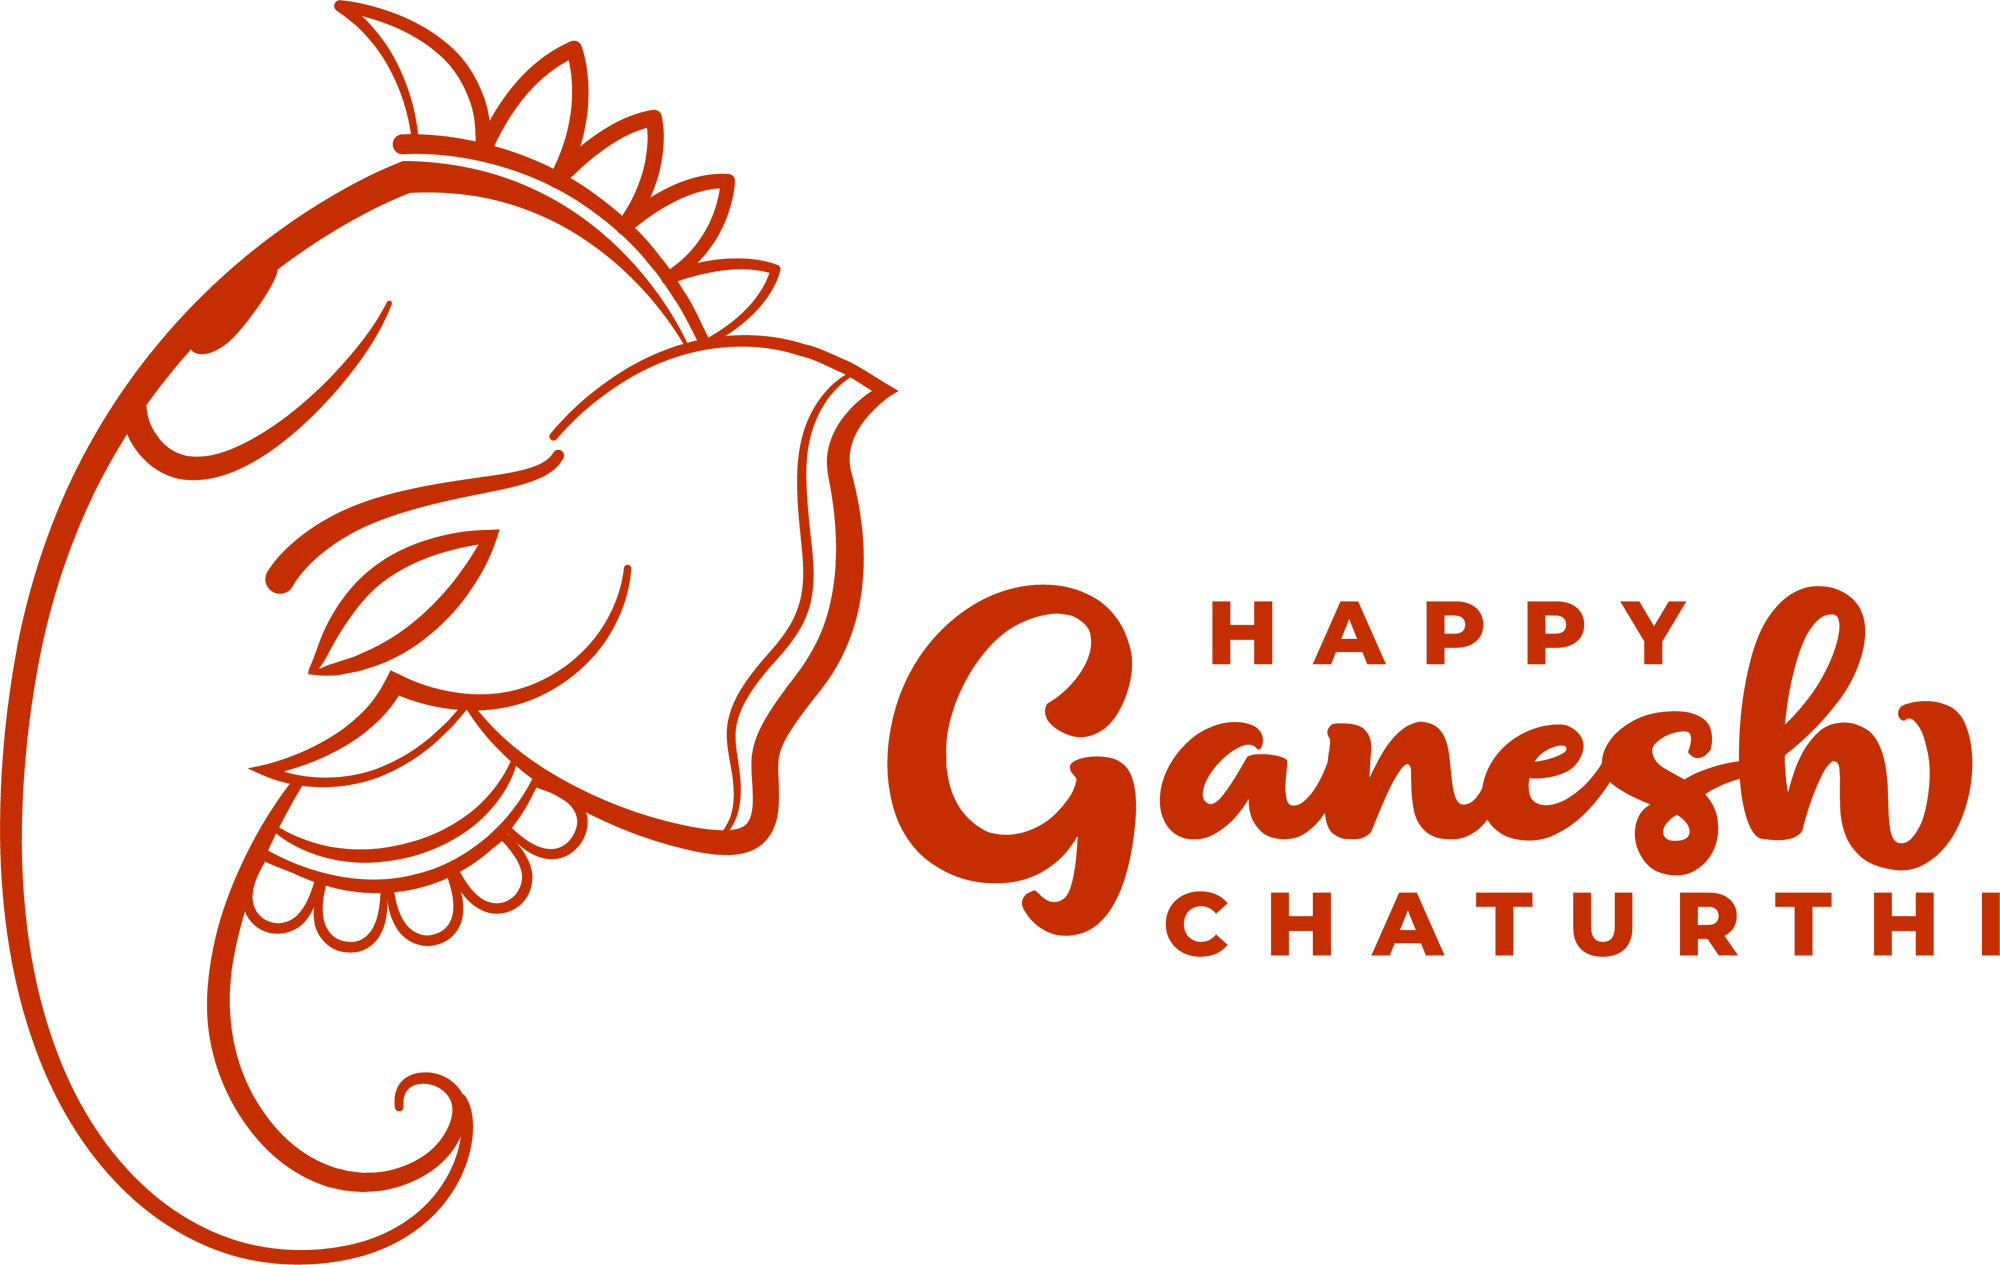 Happy Ganesh Chaturthi Ganesh Chaturthi PNG Image Download Free